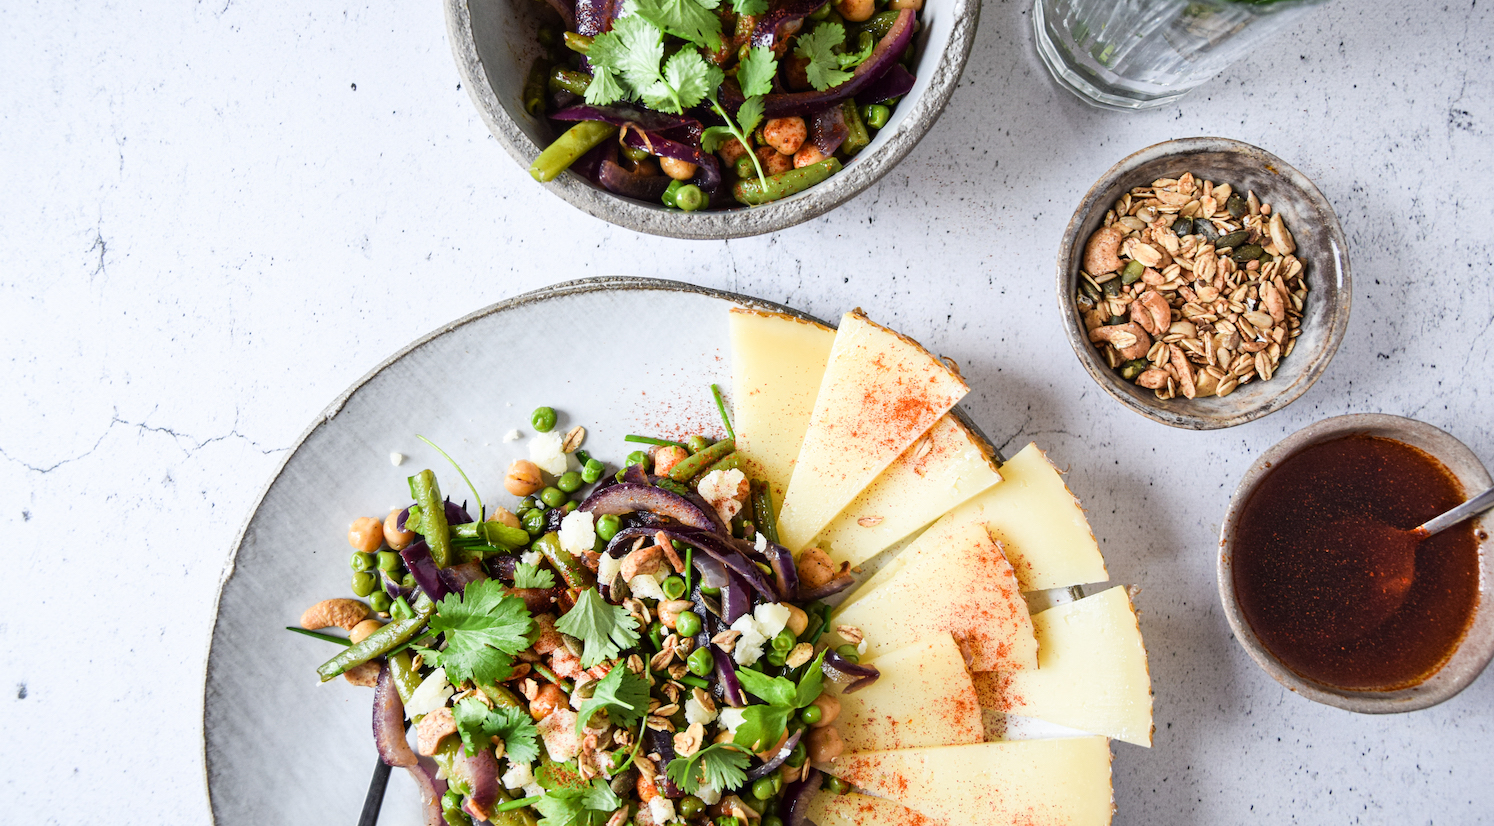 Legume salad with manchego, garden herbs and Sandra's cashew pumpkin granola - XAVIES’